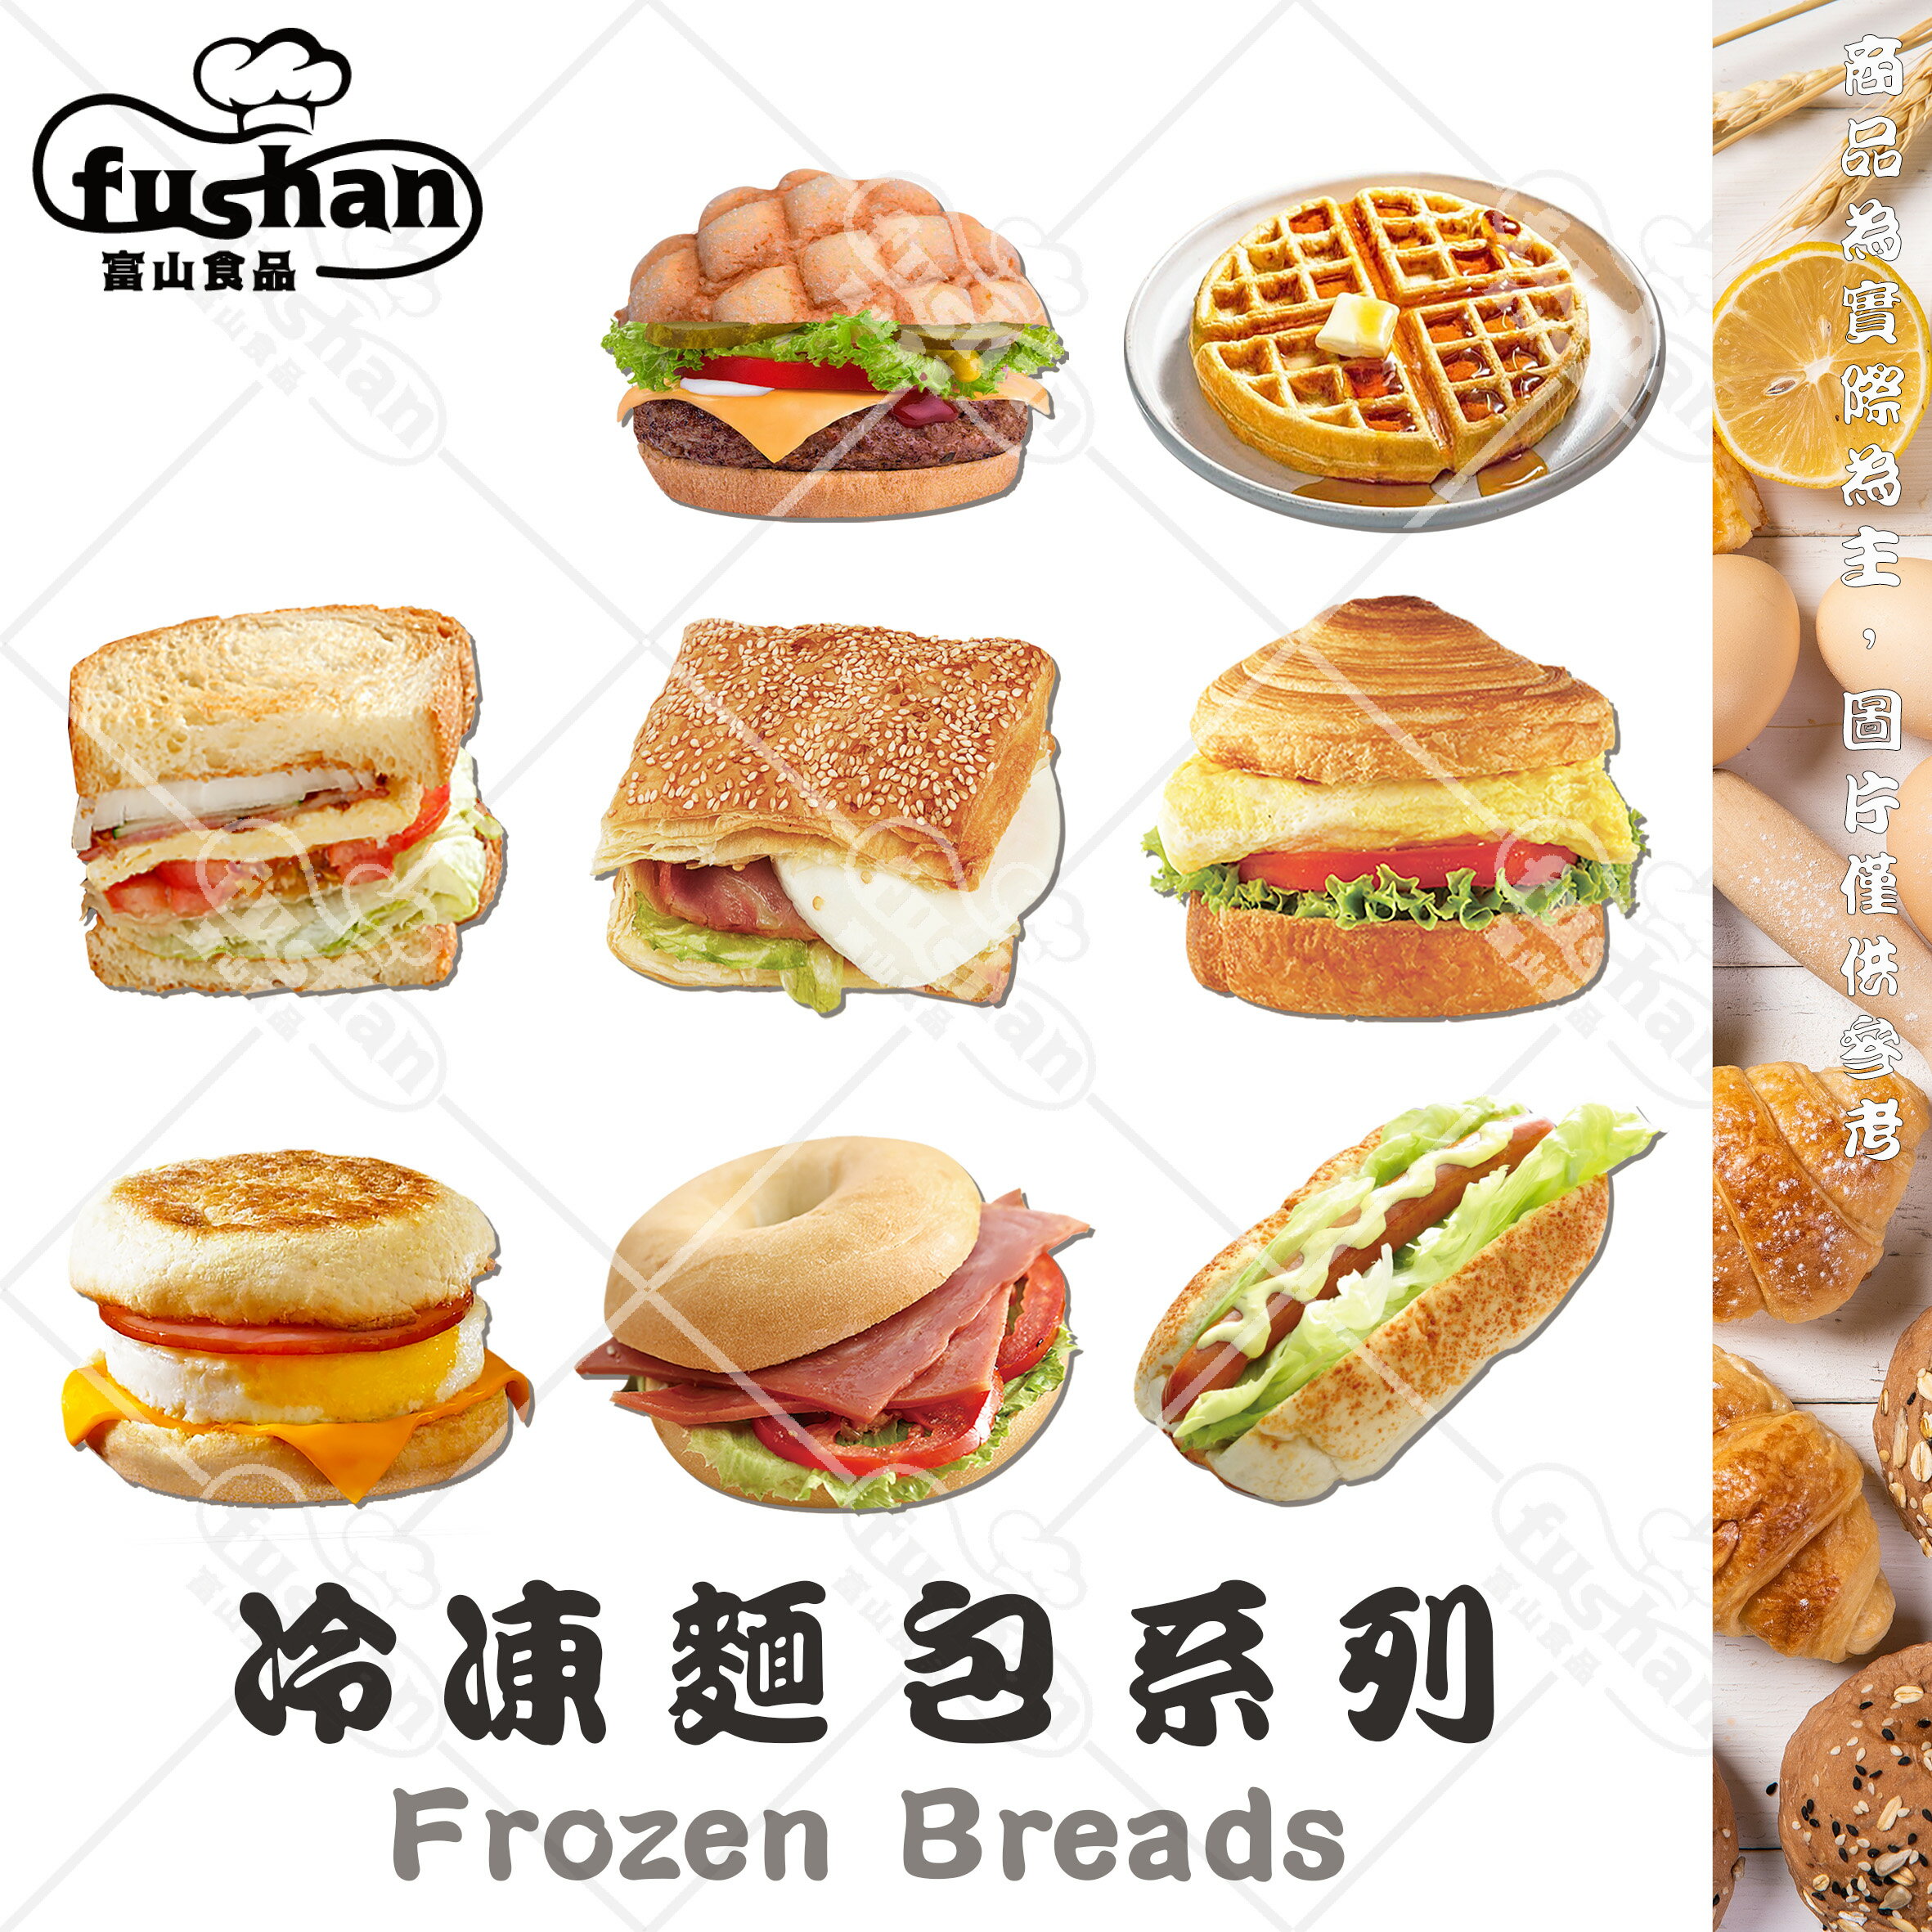 【富山食品】冷凍麵包系列 13種 創意多變 香氣十足 加熱即食 早餐食材 小漢堡 滿福堡 原味貝果 麵包 下午茶